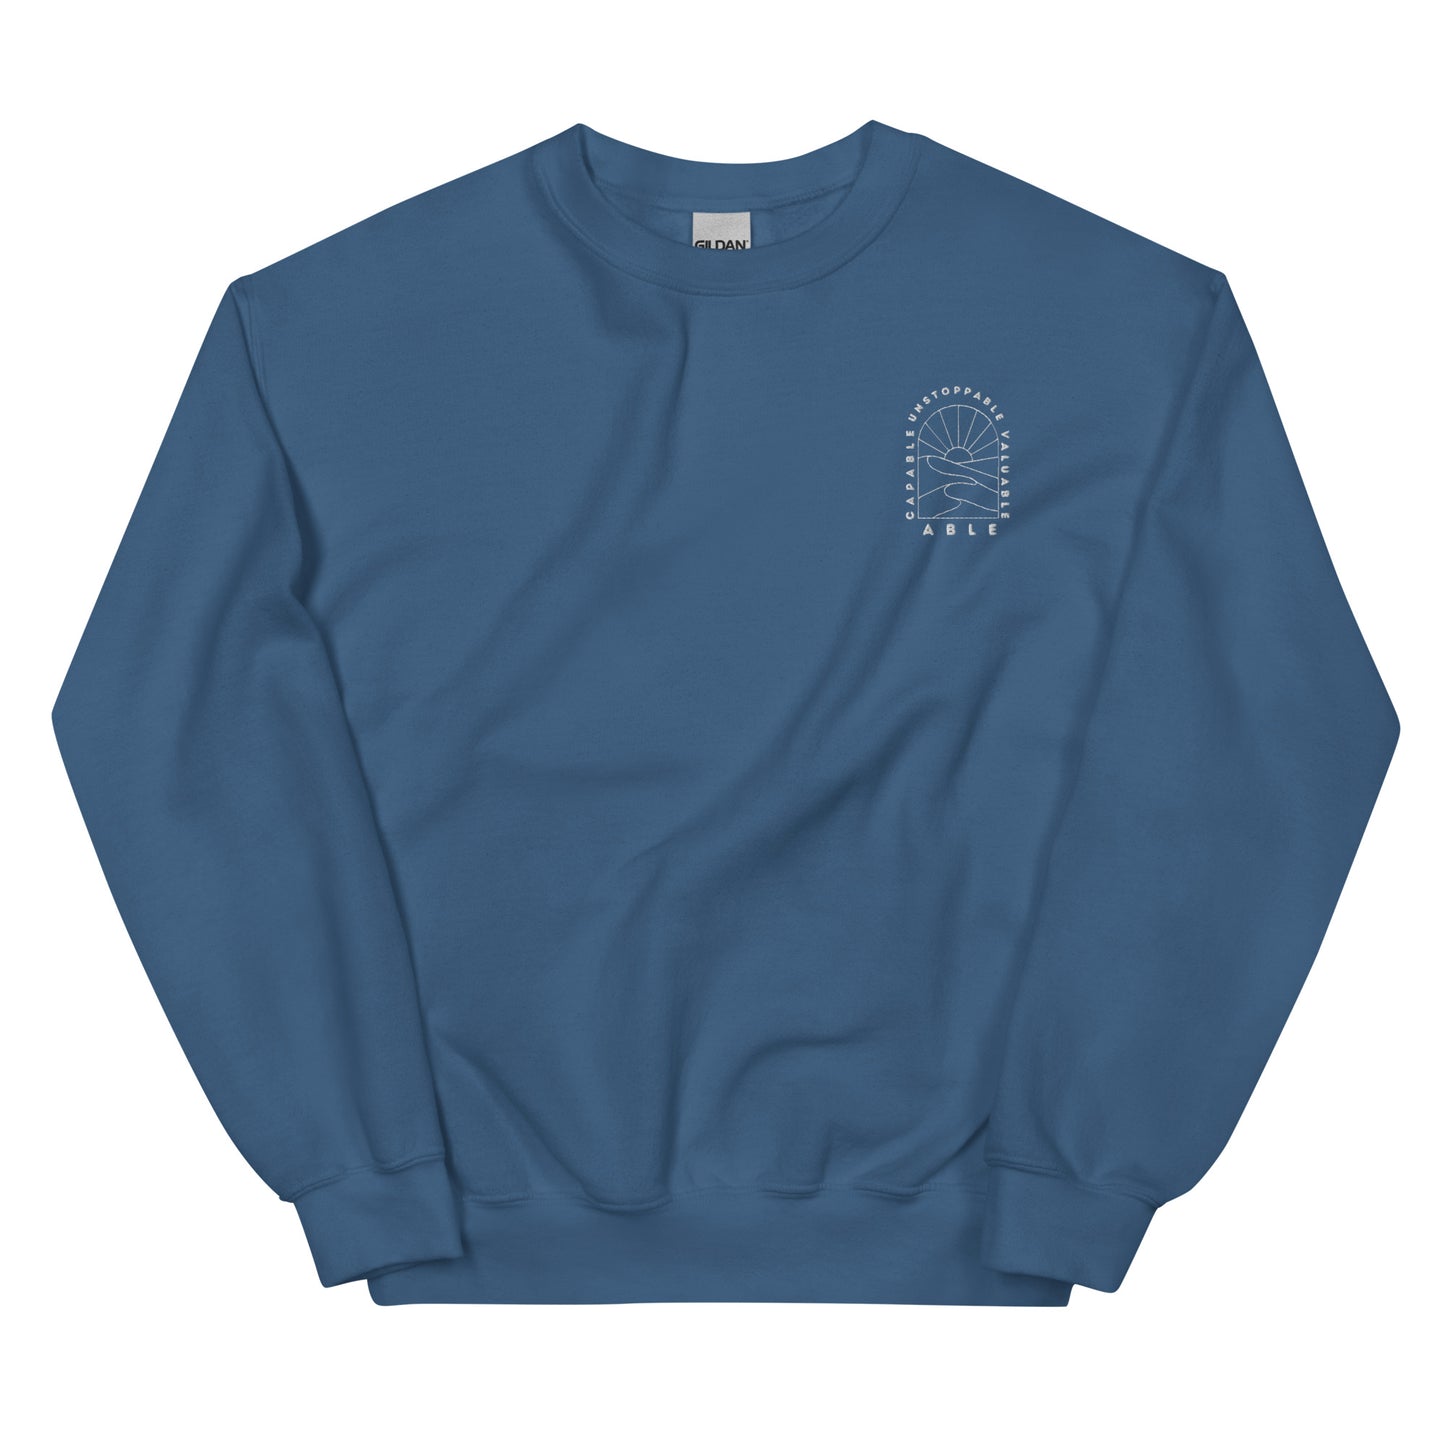 ABLE Embroidery Unisex Sweatshirt